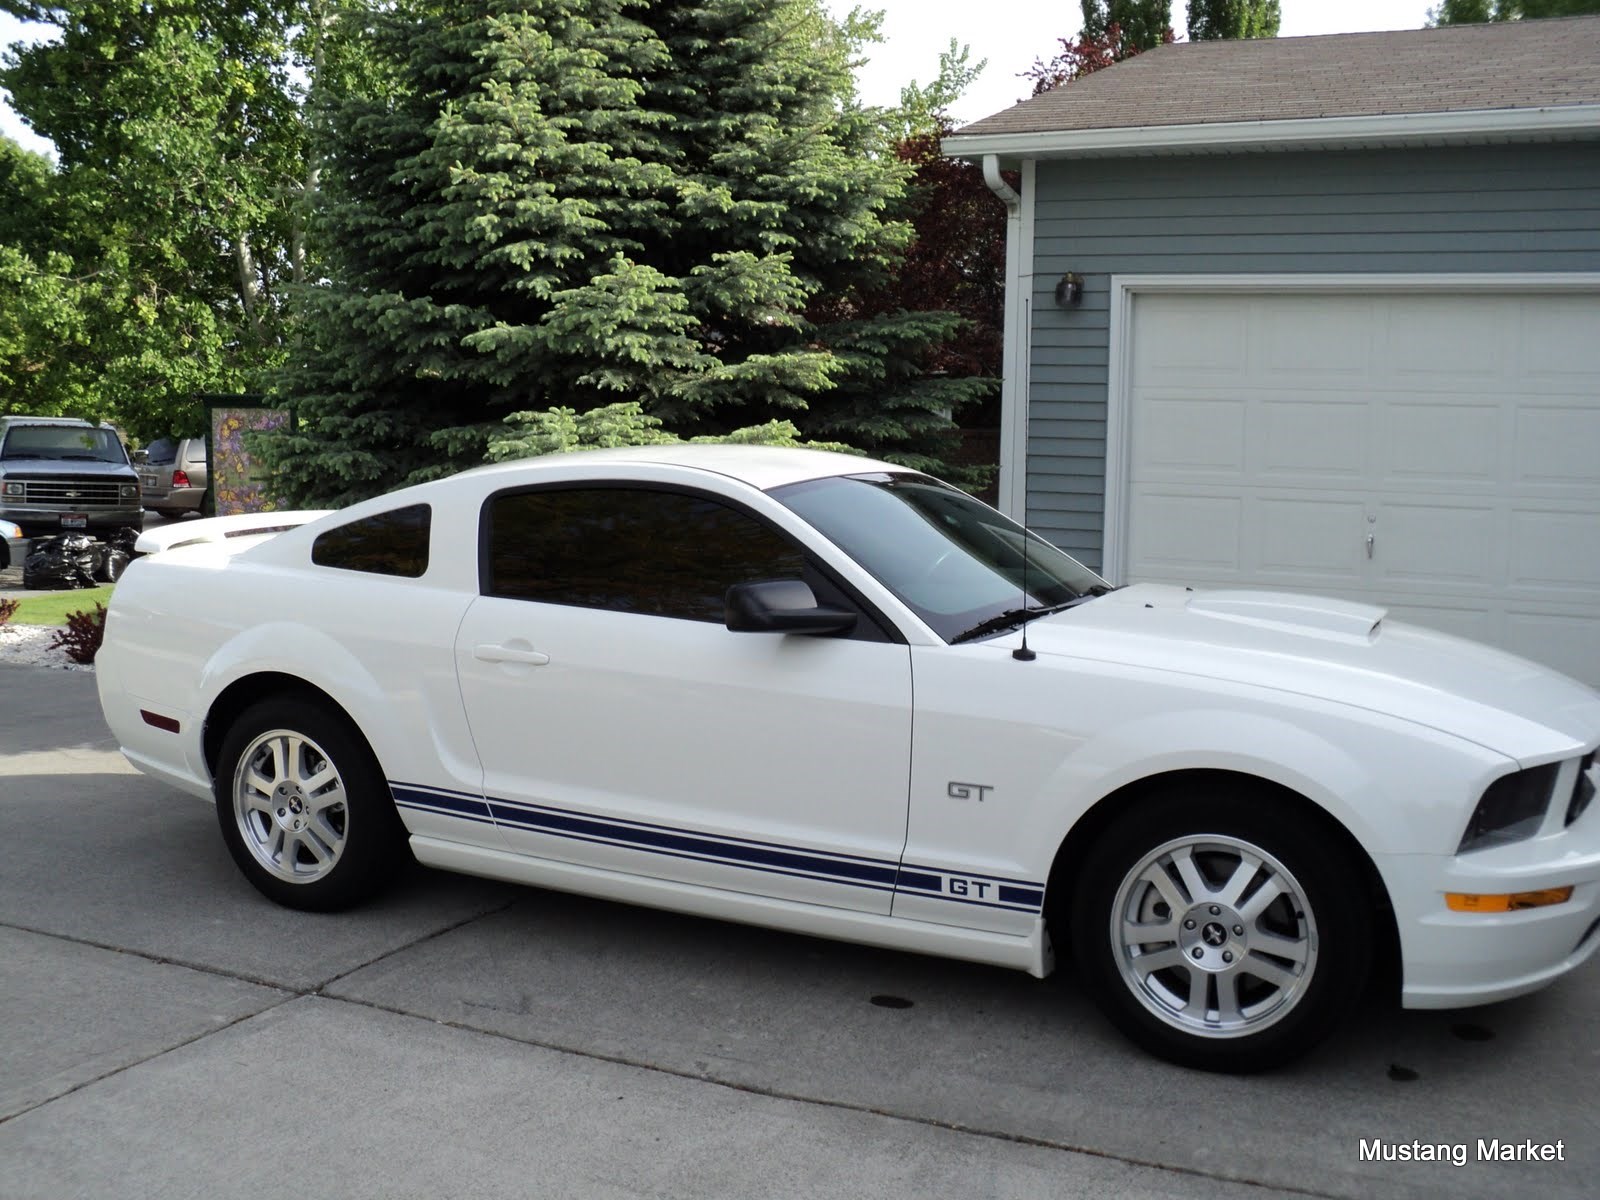 2007 Mustang Gt stripe kit